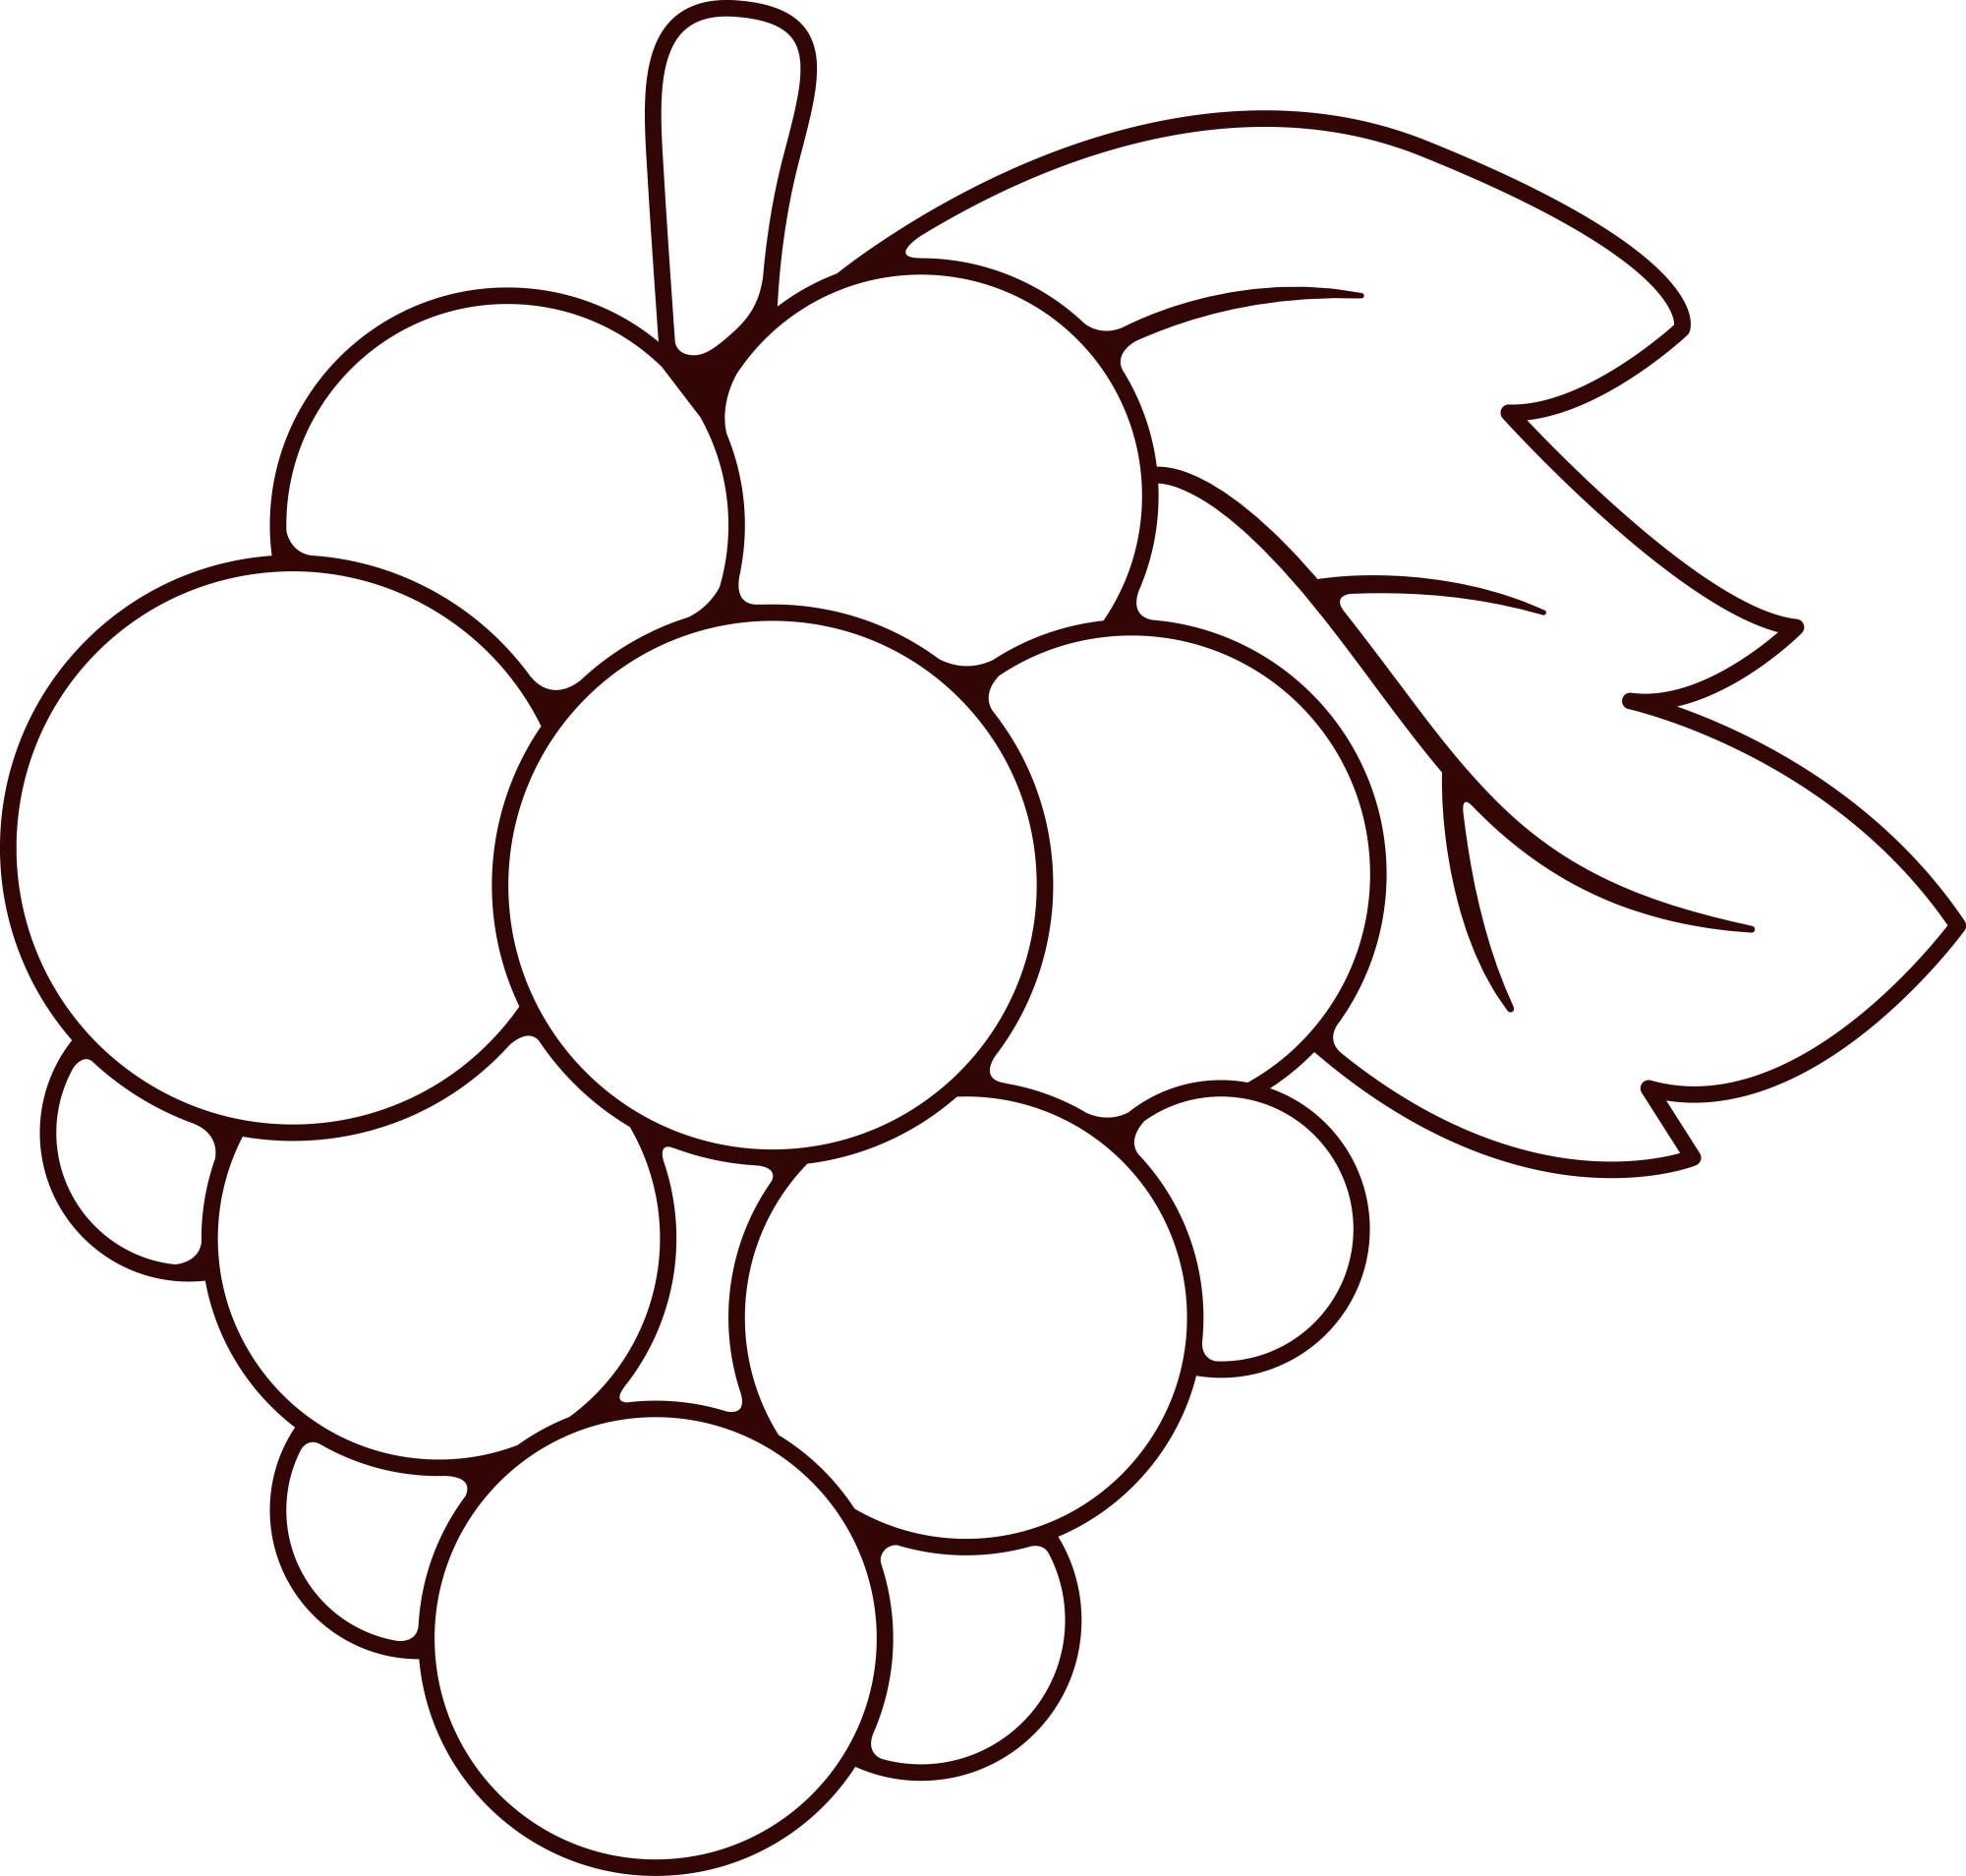 Раскраска для детей: веточка винограда с листочком